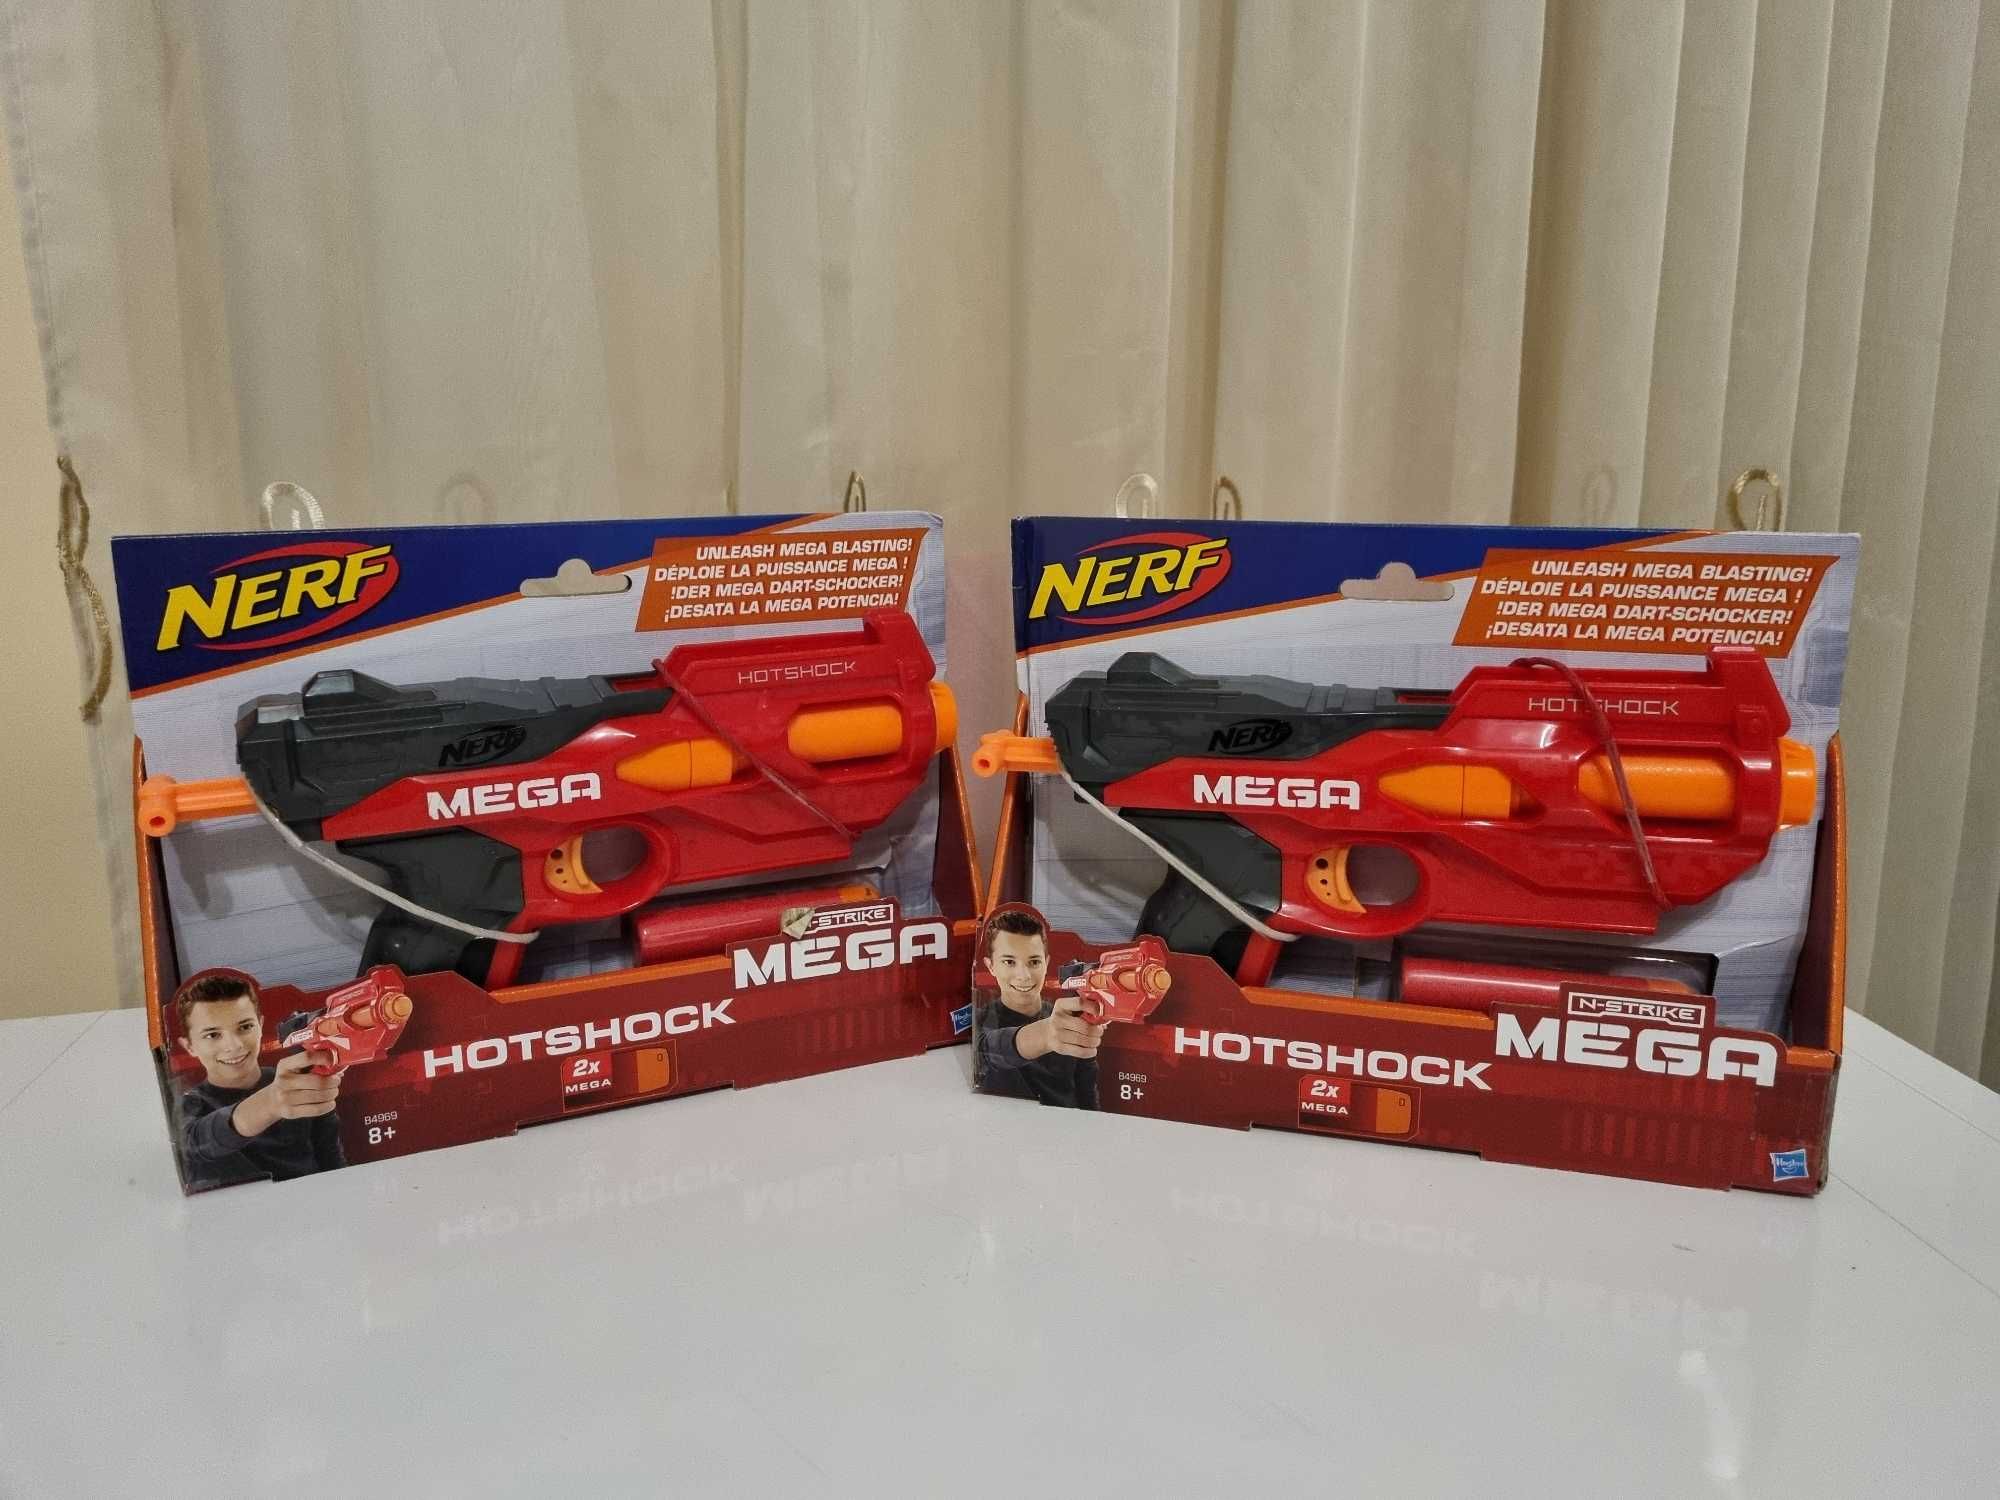 Pistol de jucarie Nerf Mega N-Strike Hotshock, 2 bucati.